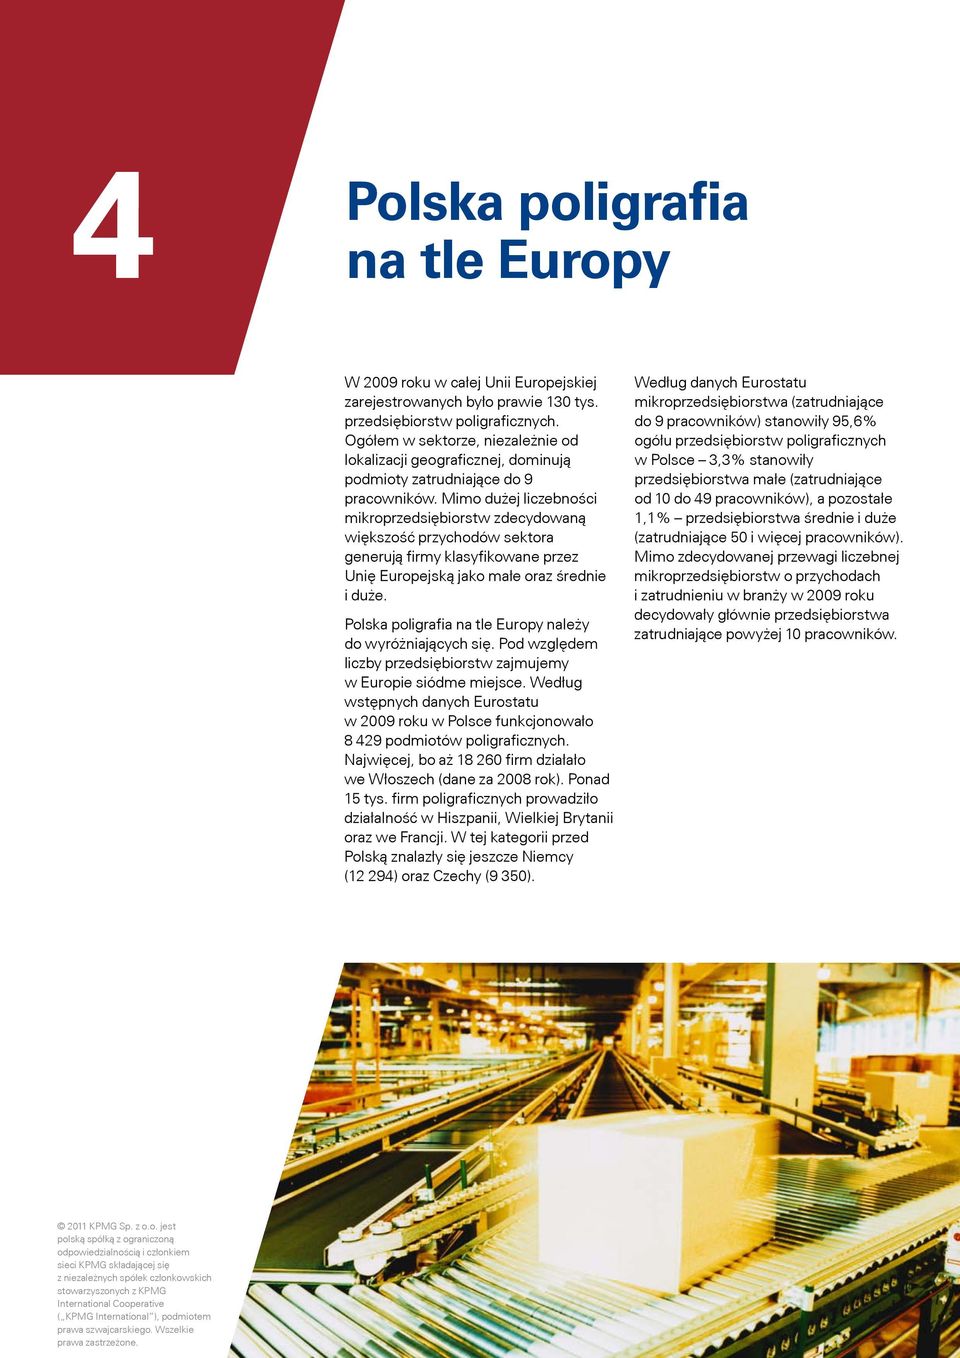 Mimo dużej liczebności mikroprzedsiębiorstw zdecydowaną większość przychodów sektora generują firmy klasyfikowane przez Unię Europejską jako małe oraz średnie i duże.